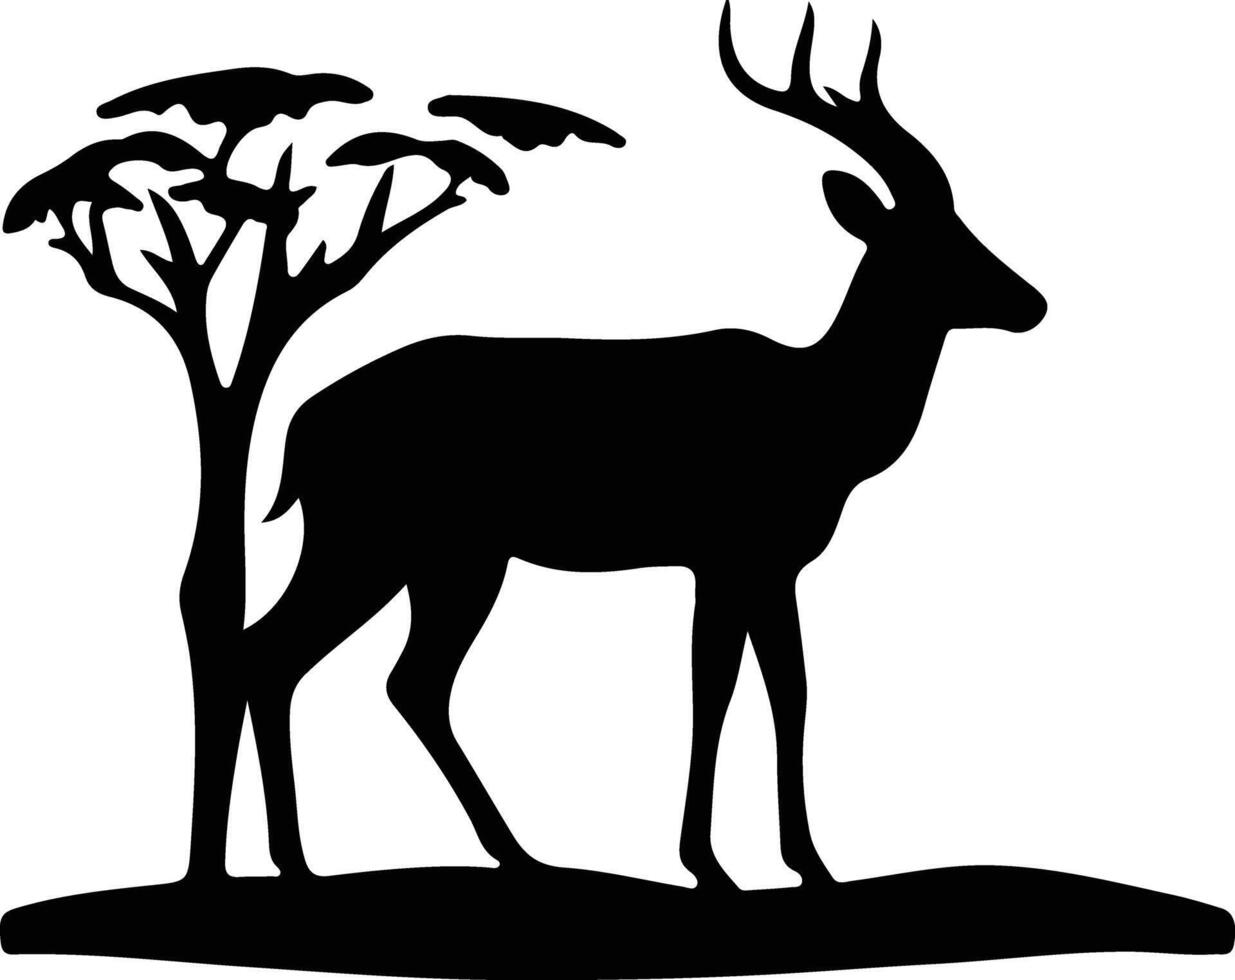 impala black silhouette vector